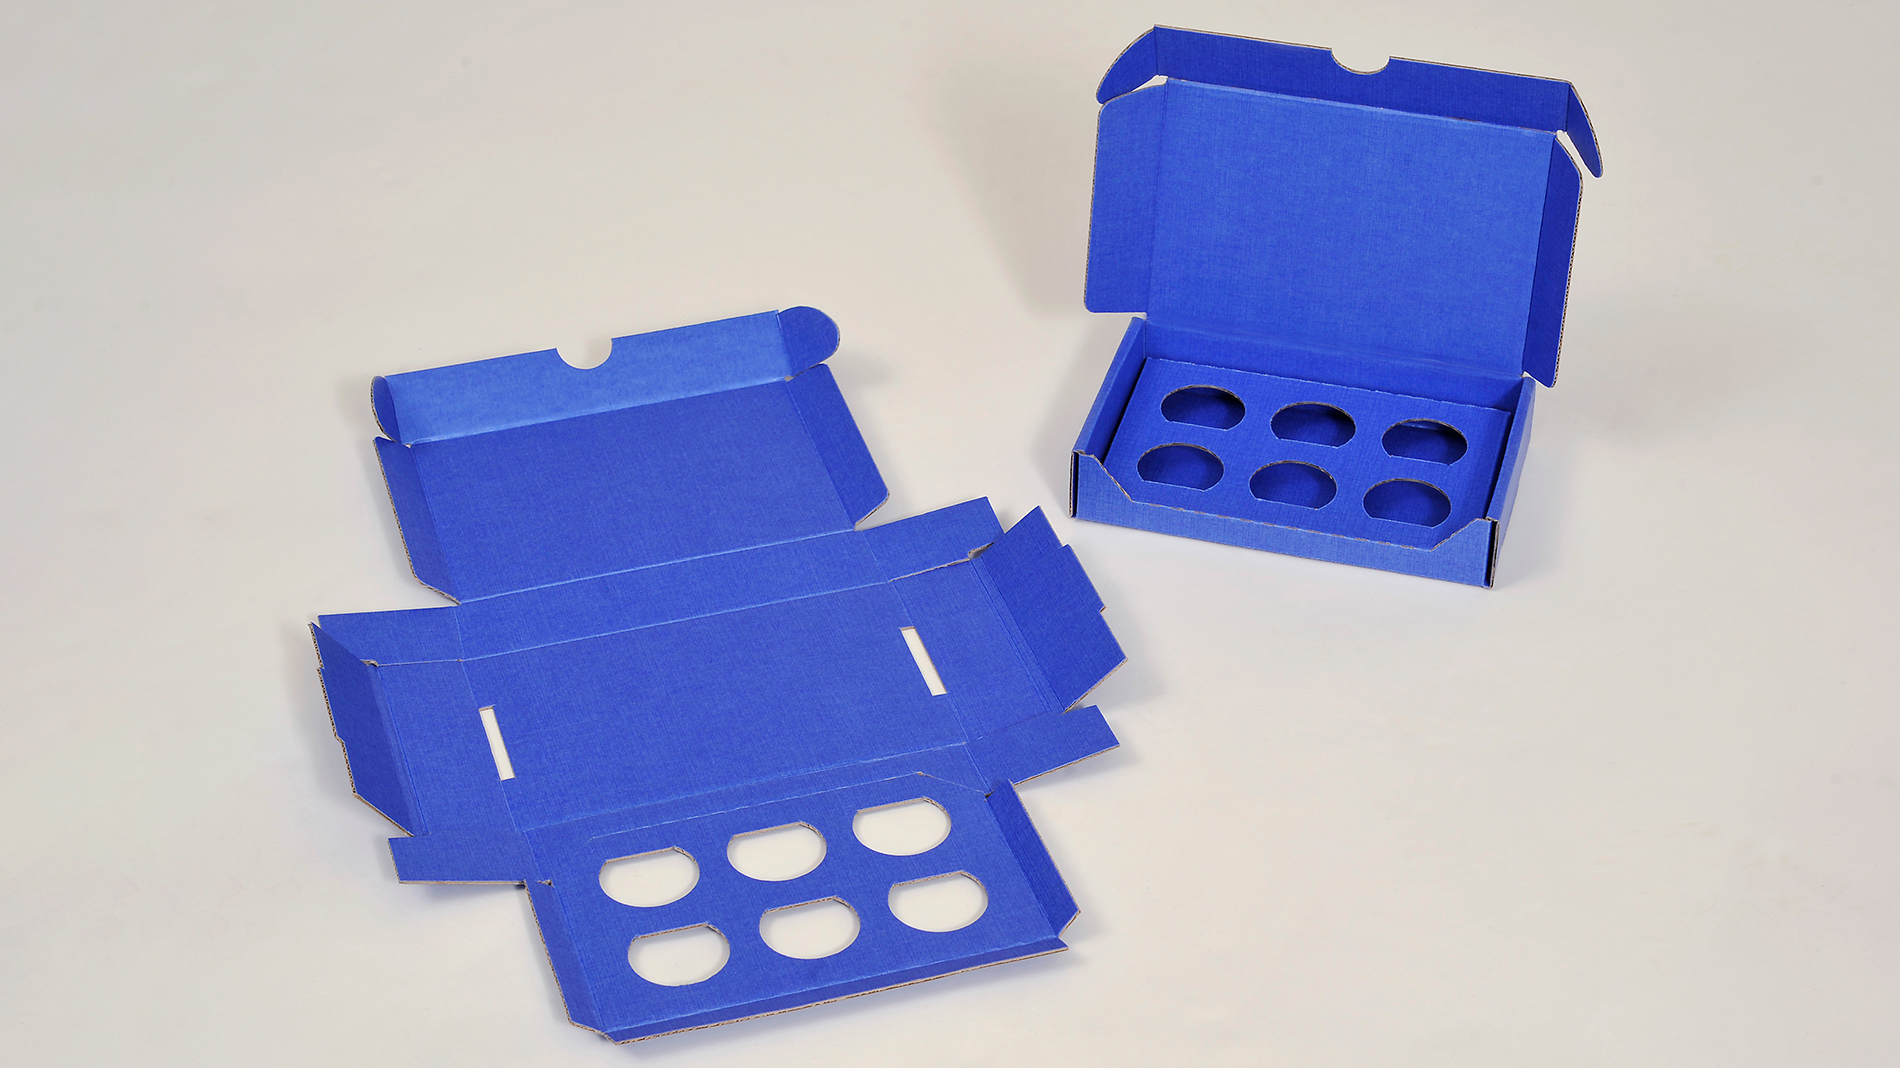 Bild 3: Produkte können in dieser einteiligen Verpackungslösung mit dem anhängenden Inlet fixiert werden. (Bild: Straub-Verpackungen GmbH)